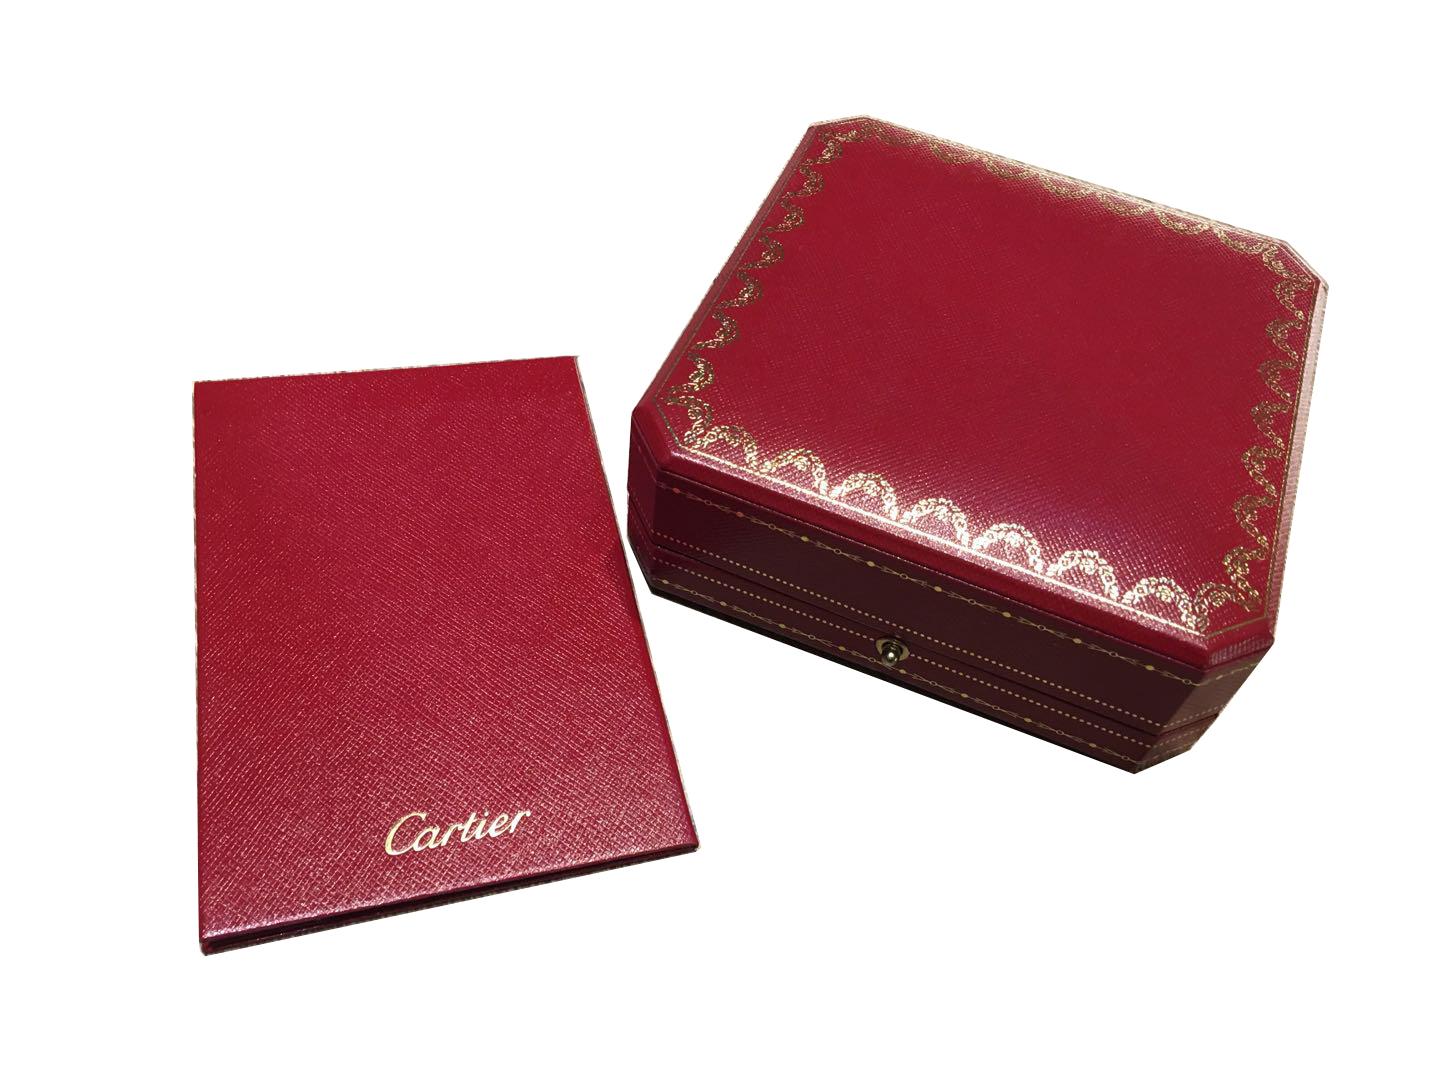 Cartier Juste un Clou Necklace, 18 Karat White Gold, Diamond Paved For Sale 1